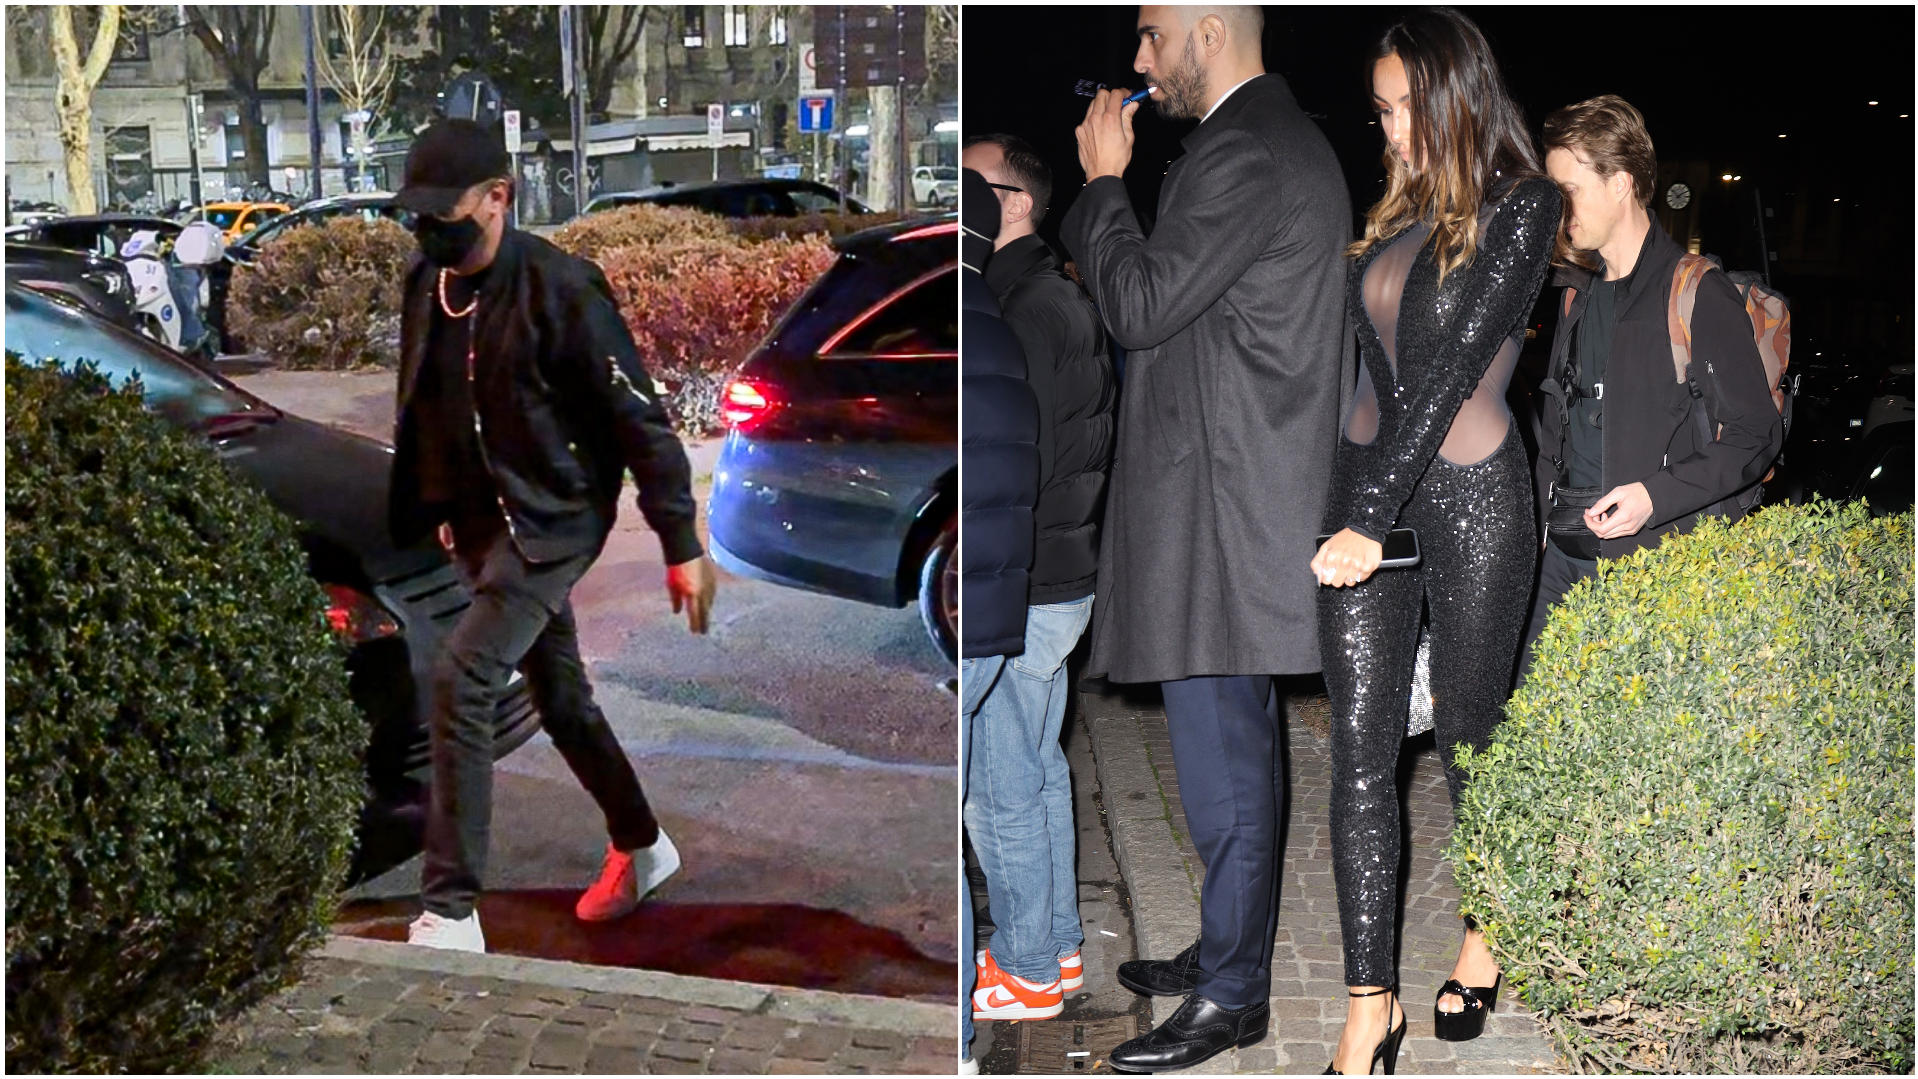 Collage aus 2 Fotos: Das linke Bild zeigt Leonardo DiCaprio, der am Club ankommt und verhüllt ist, das rechte Foto zeigt Madalina Ghenea in einem schwarzen Glitzerkleid.